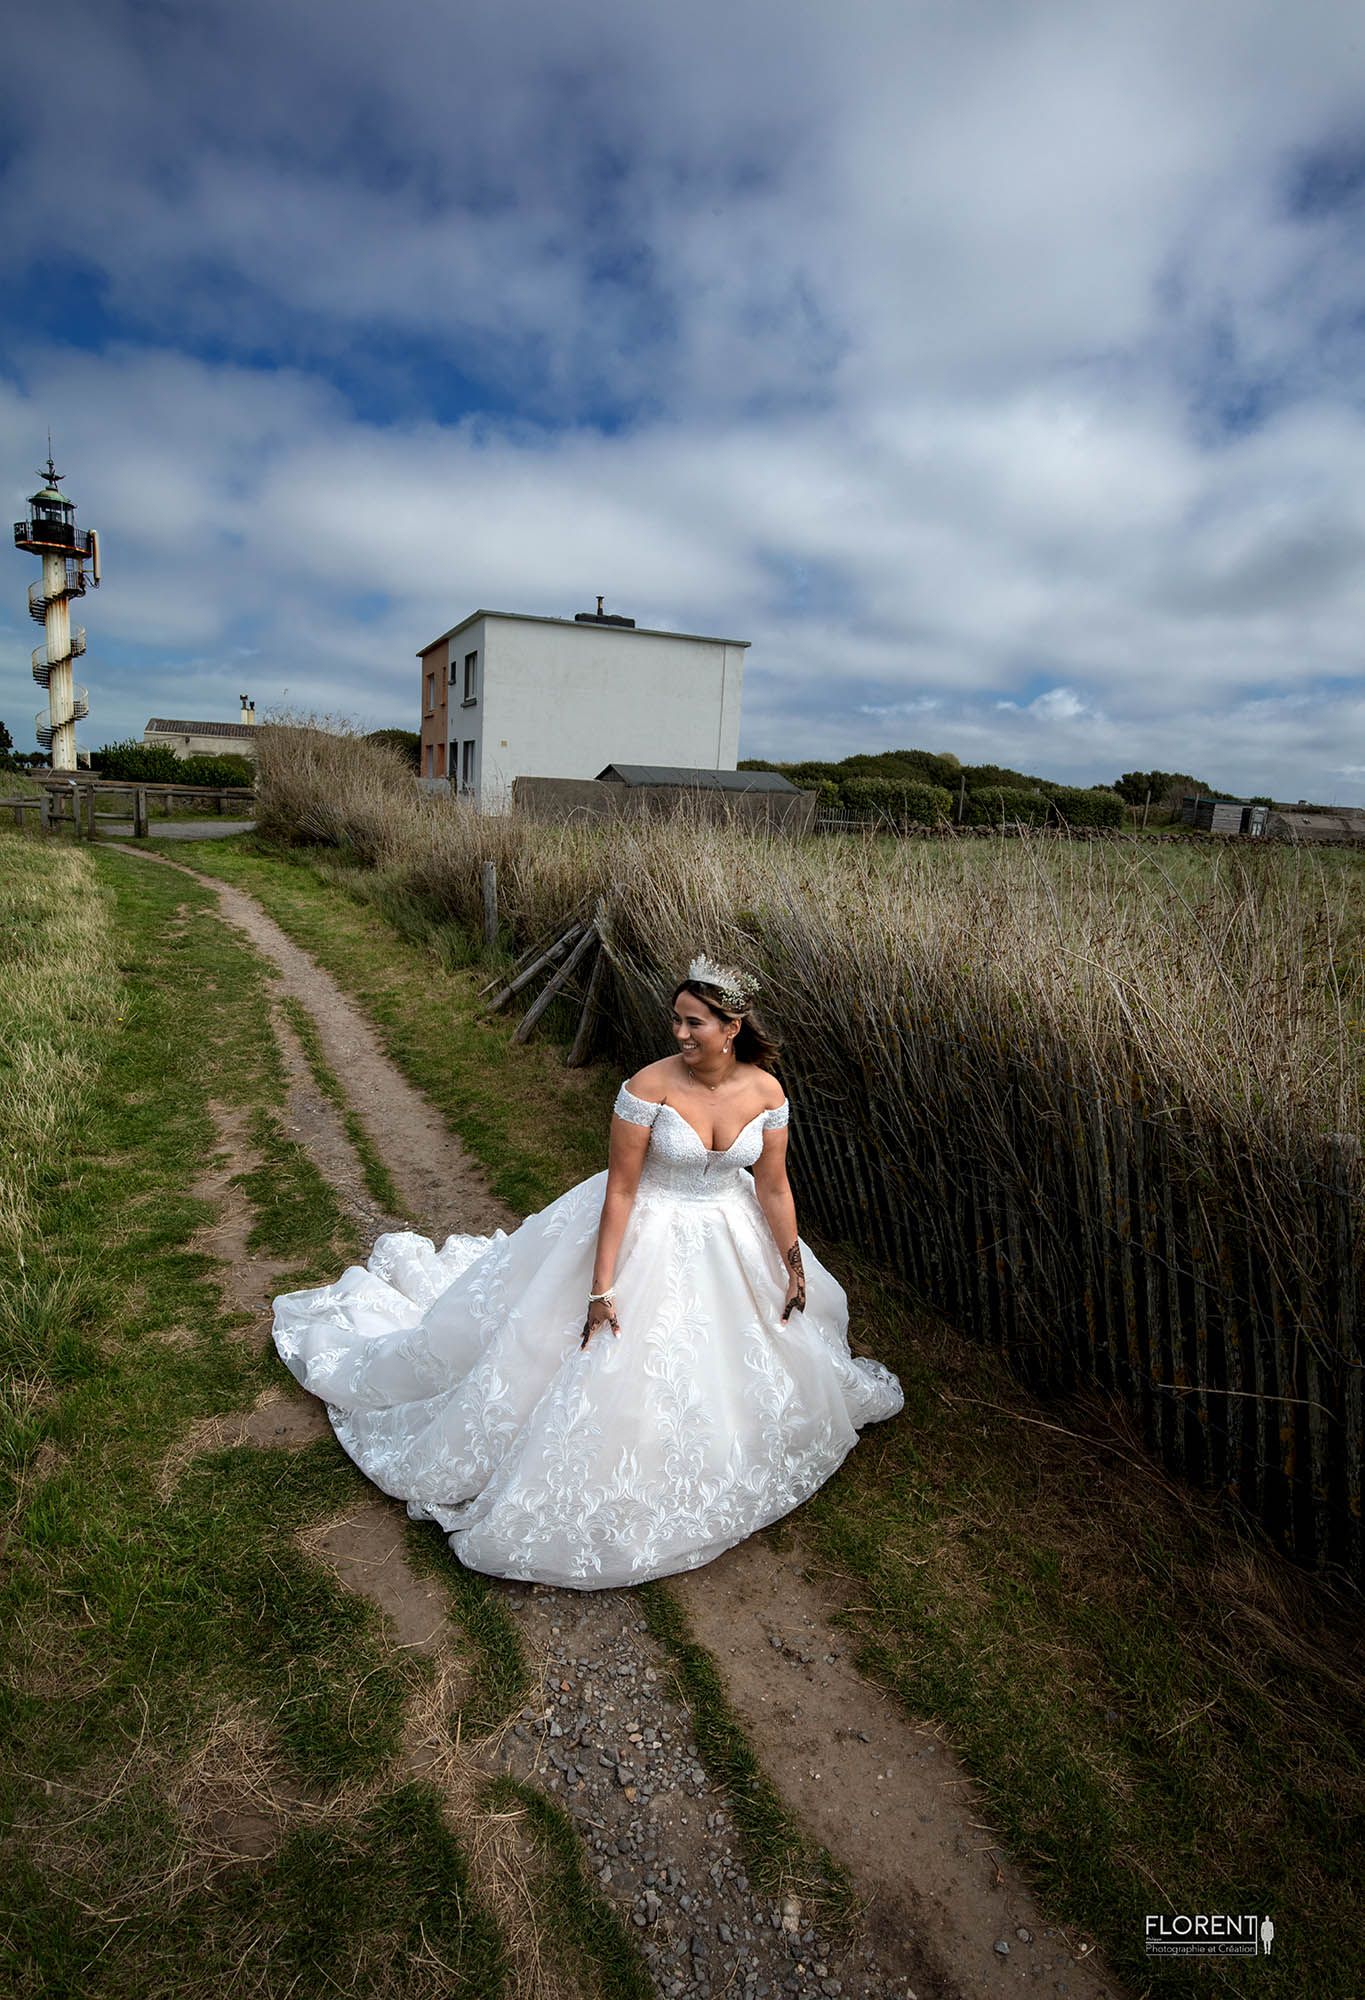 Séance photographie vers le mariage studio florent boulogne sur mer lille paris